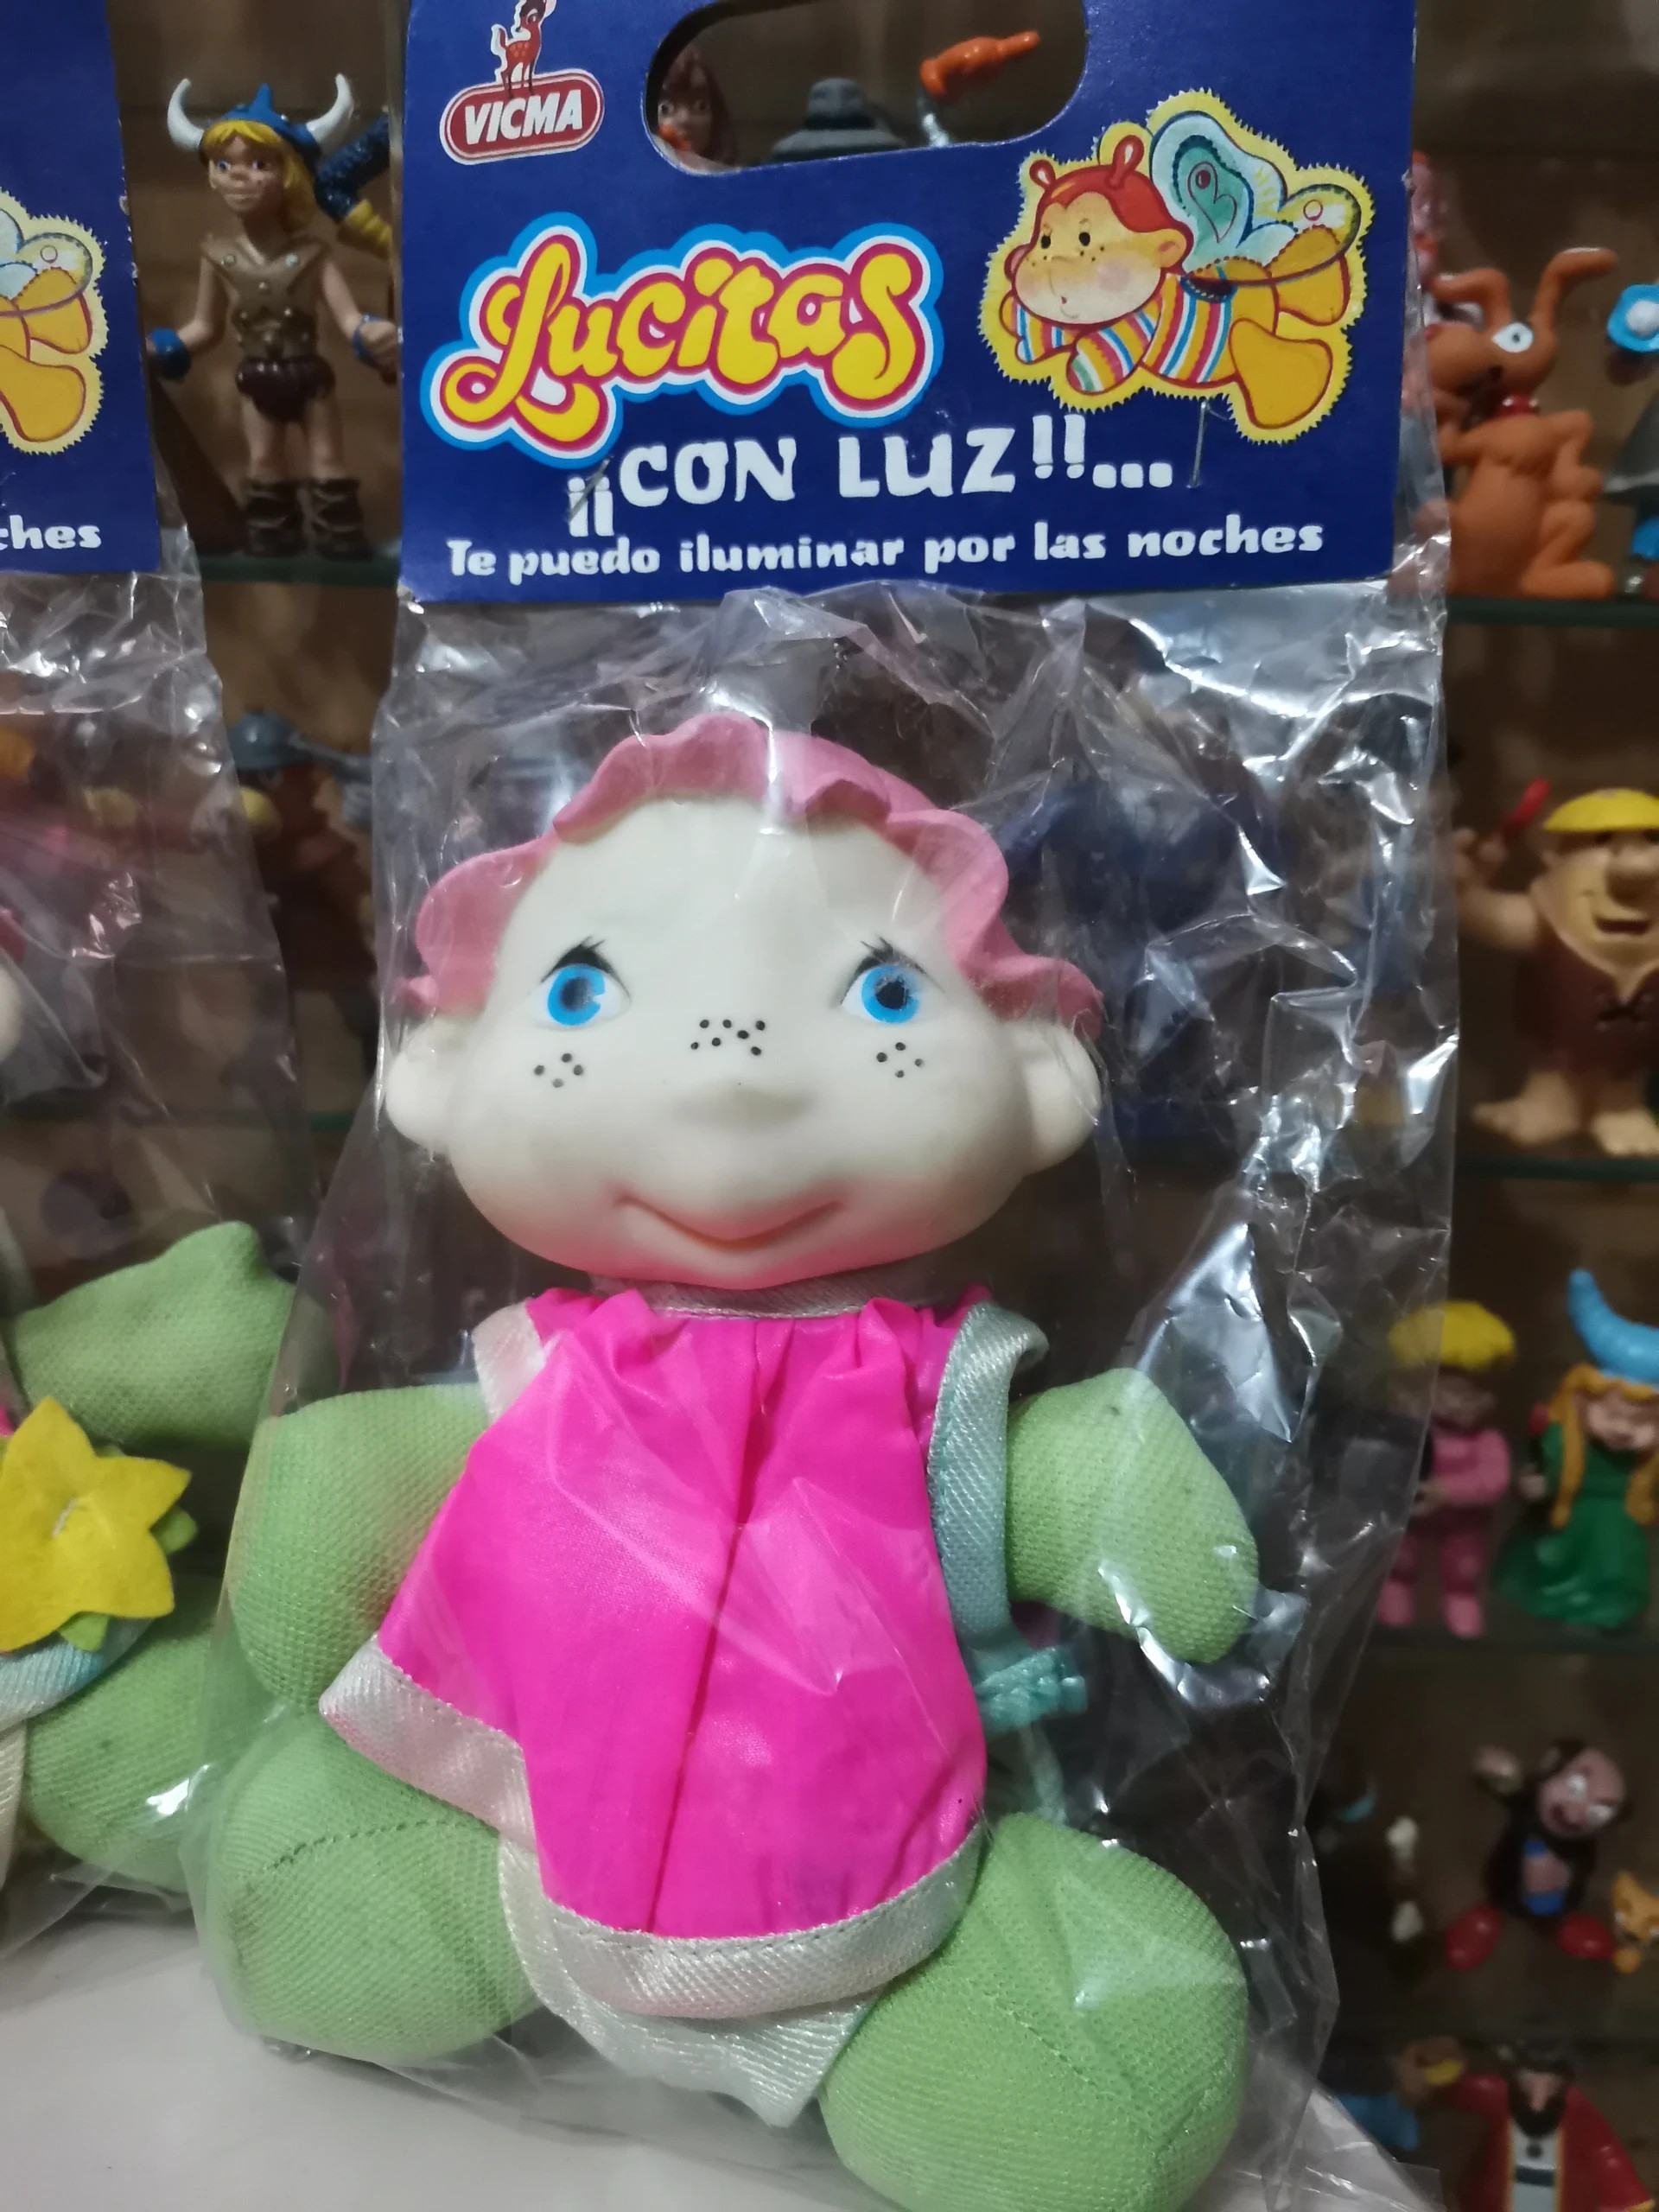 Antiguo muñeco nuevo a estrenar Lucitas de Vicma tipo Gusiluz años 80  Luciole Glowfriends